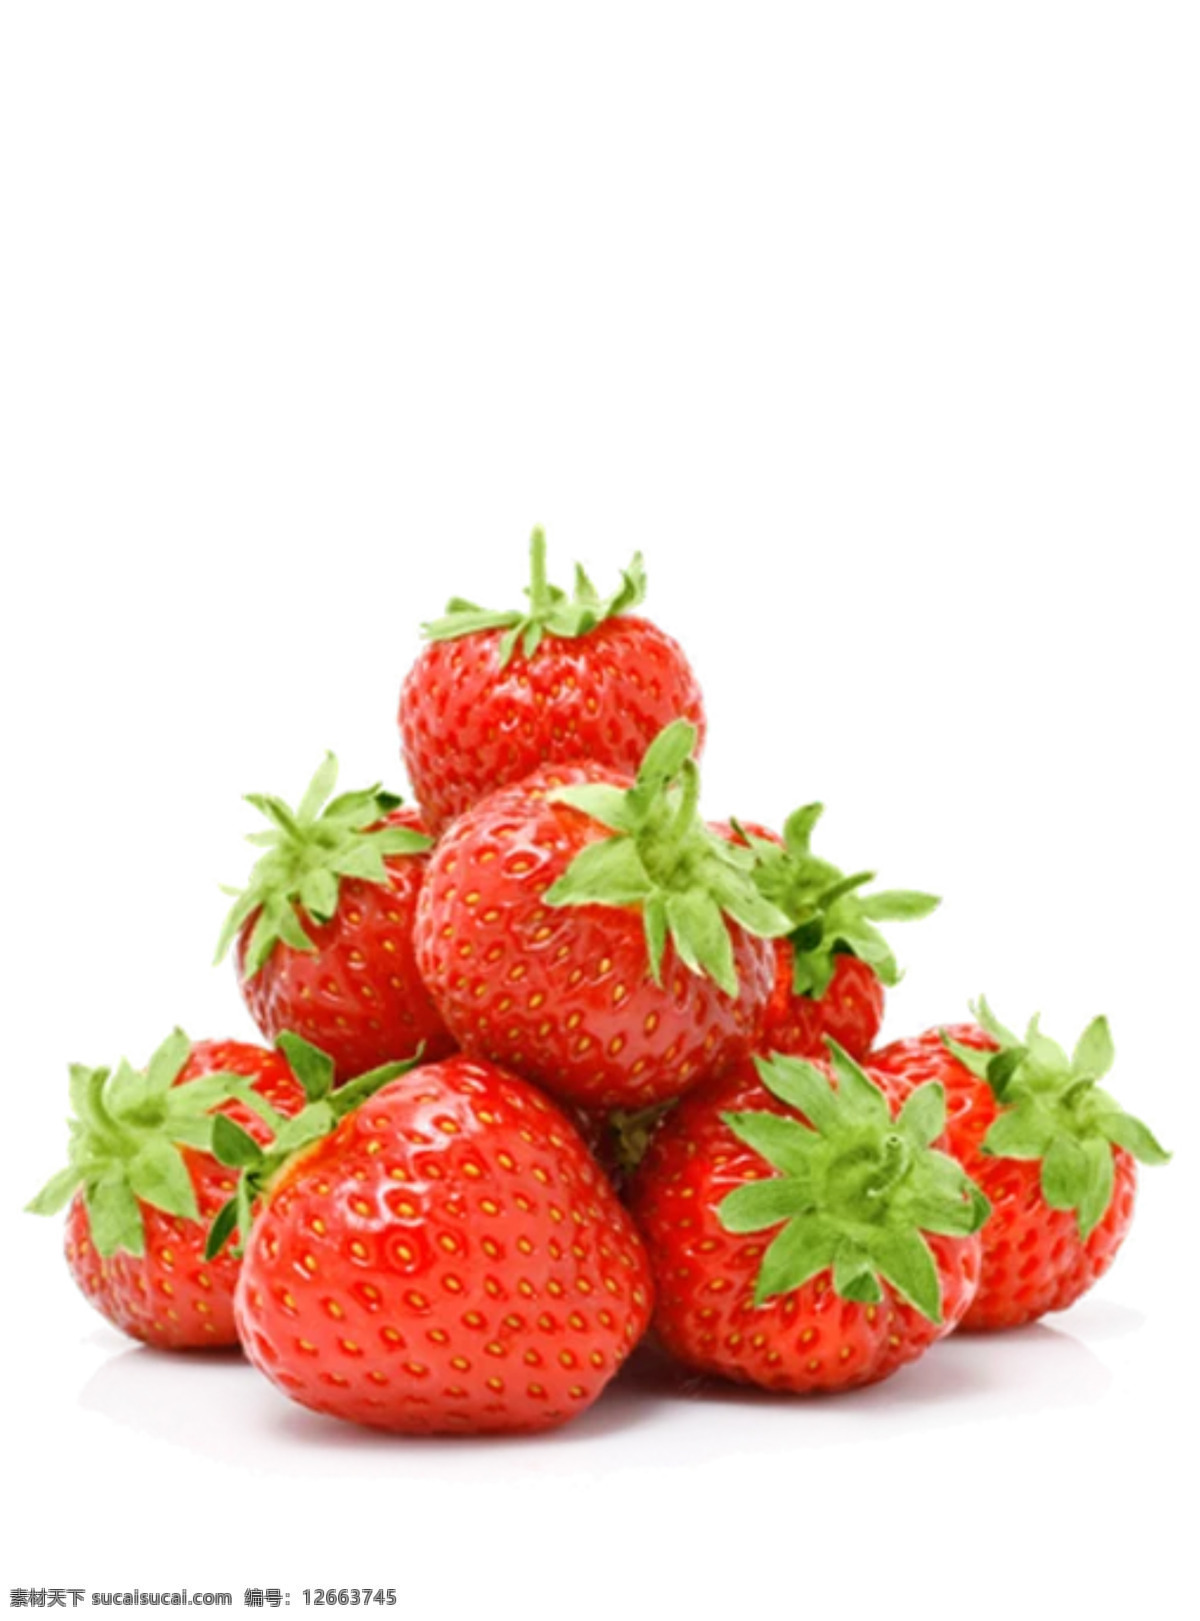 莓 草莓图片 红色草莓 奶油草莓 双流冬草莓 红草莓 甜 水果 草莓素材 草莓棚拍 草莓背景图片 草莓设计 果蔬素材